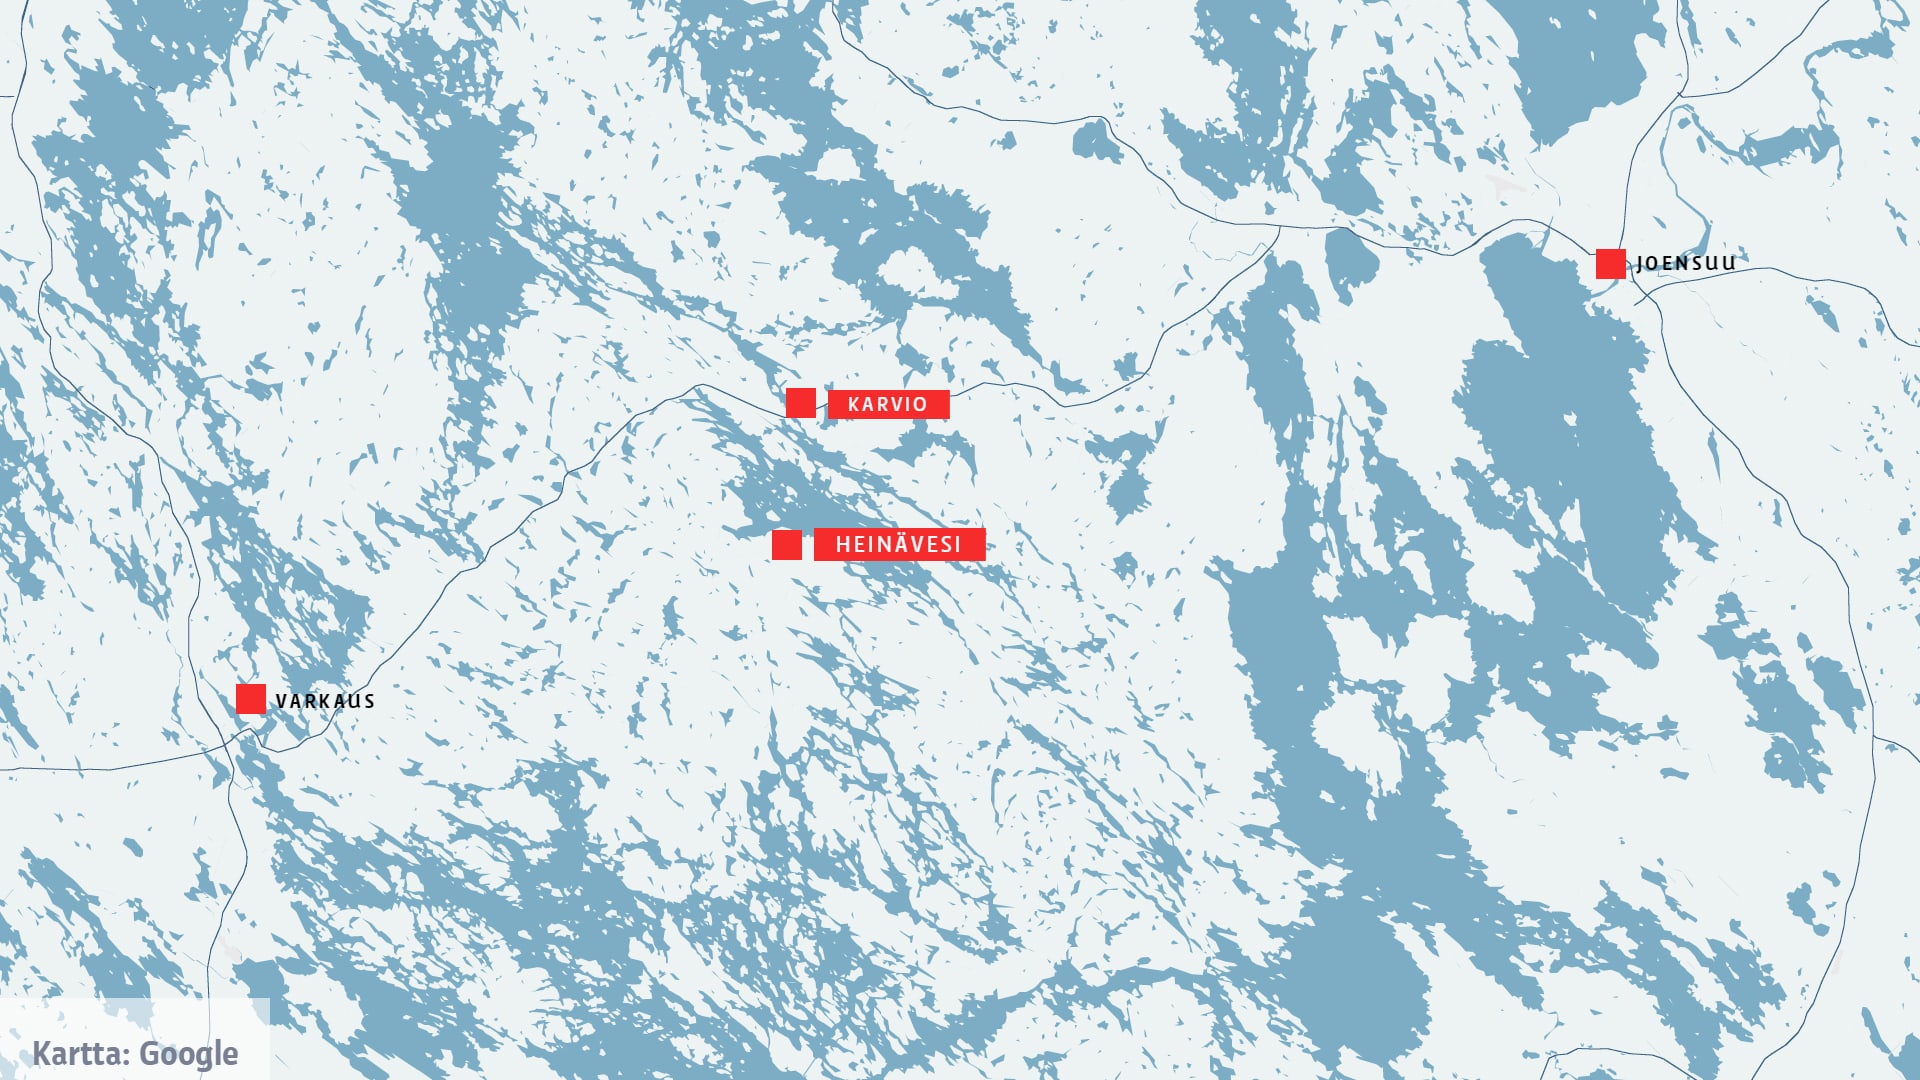 Kartta, johon on merkitty Heinävesi, Karvio, Varkaus ja Joensuu. 